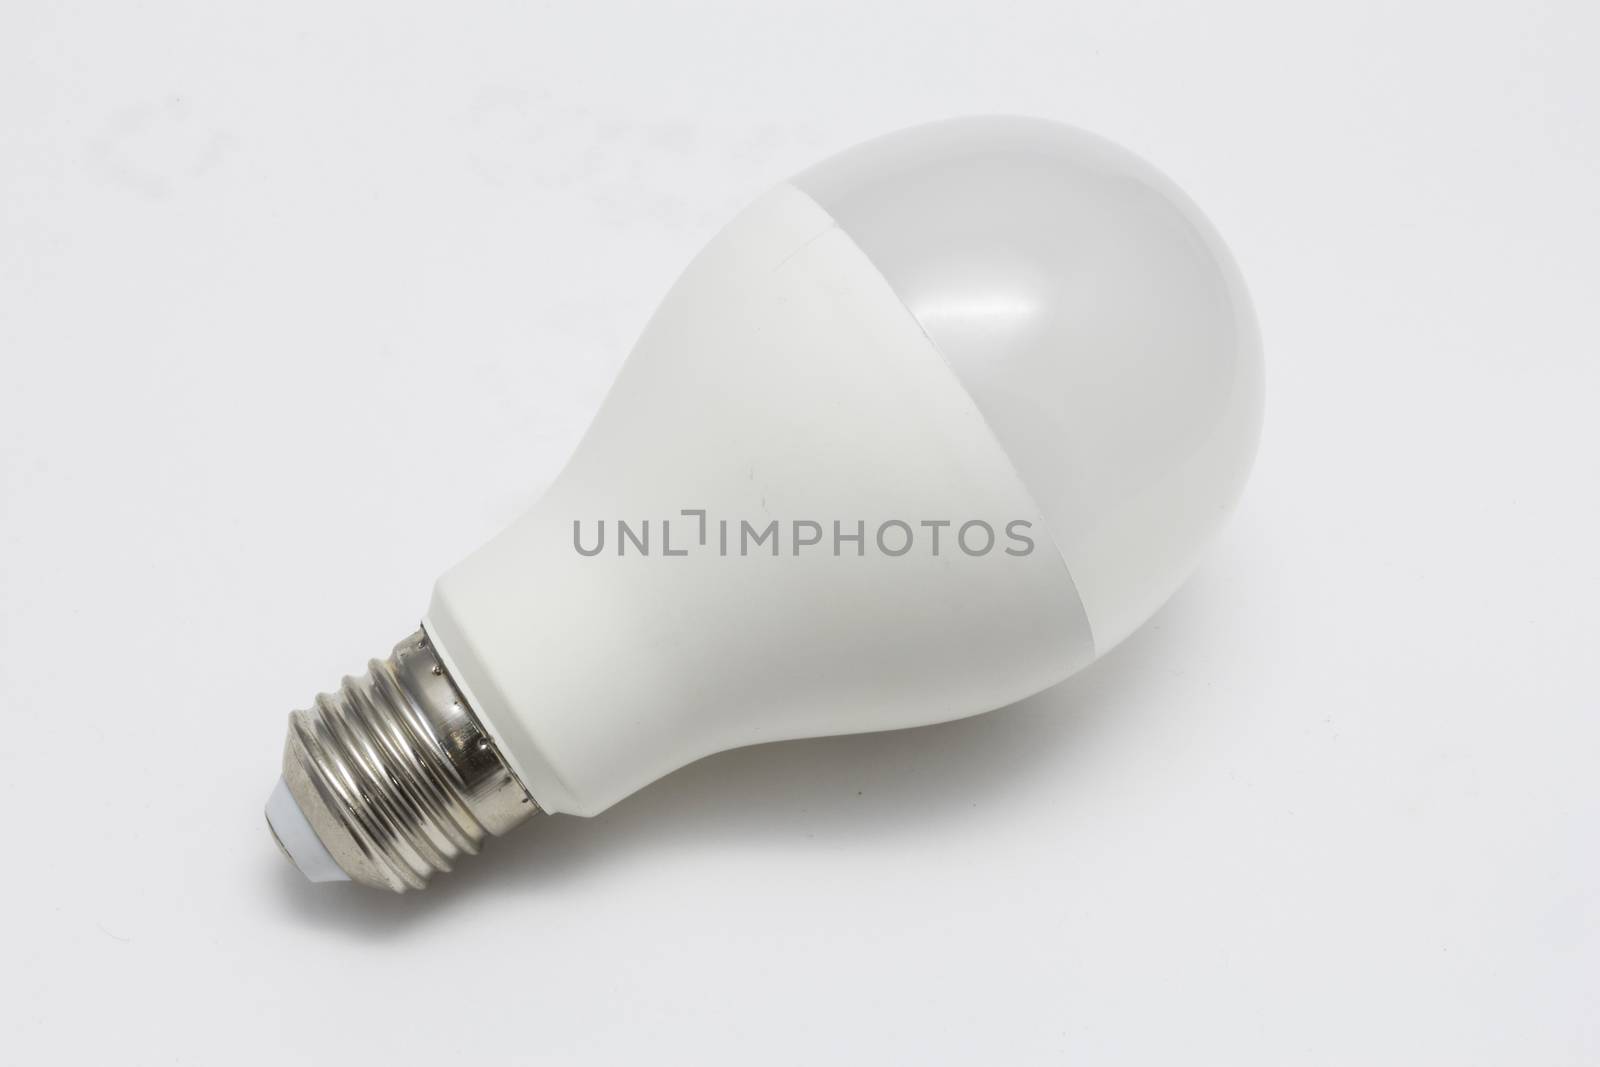 LED Light bulb isolated on white background